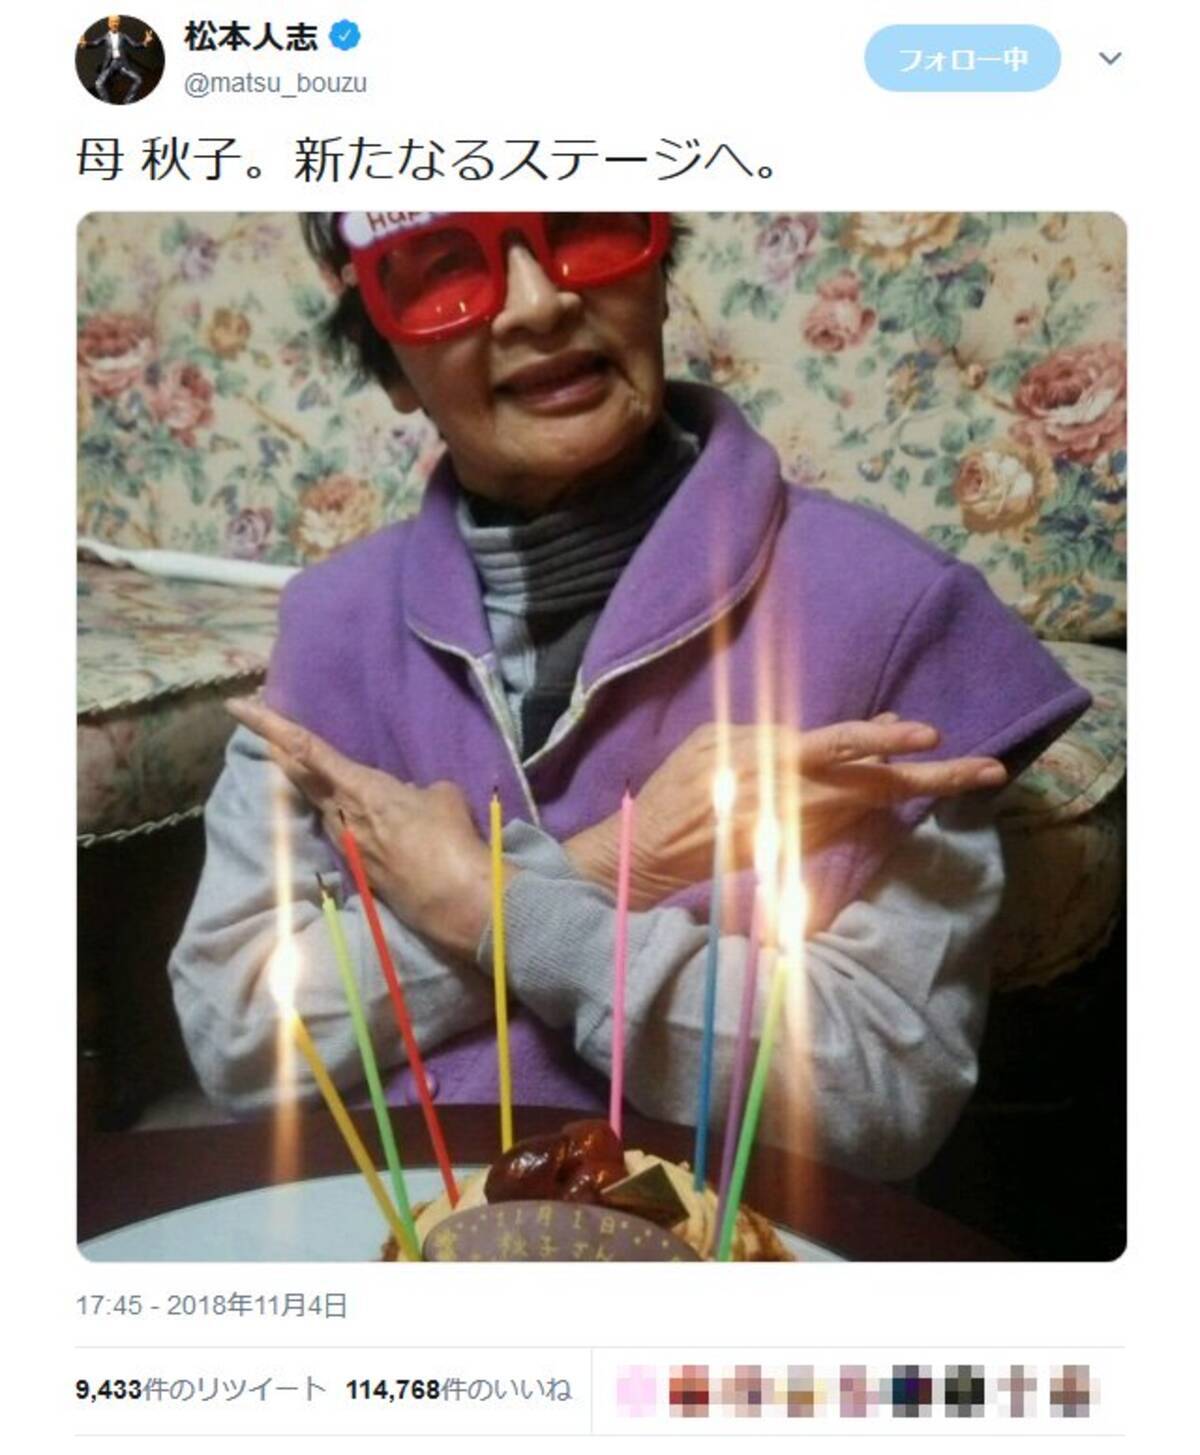 松本人志さん 母 秋子 新たなるステージへ と写真をアップ 誕生日のお祝いツイート相次ぐ 18年11月5日 エキサイトニュース